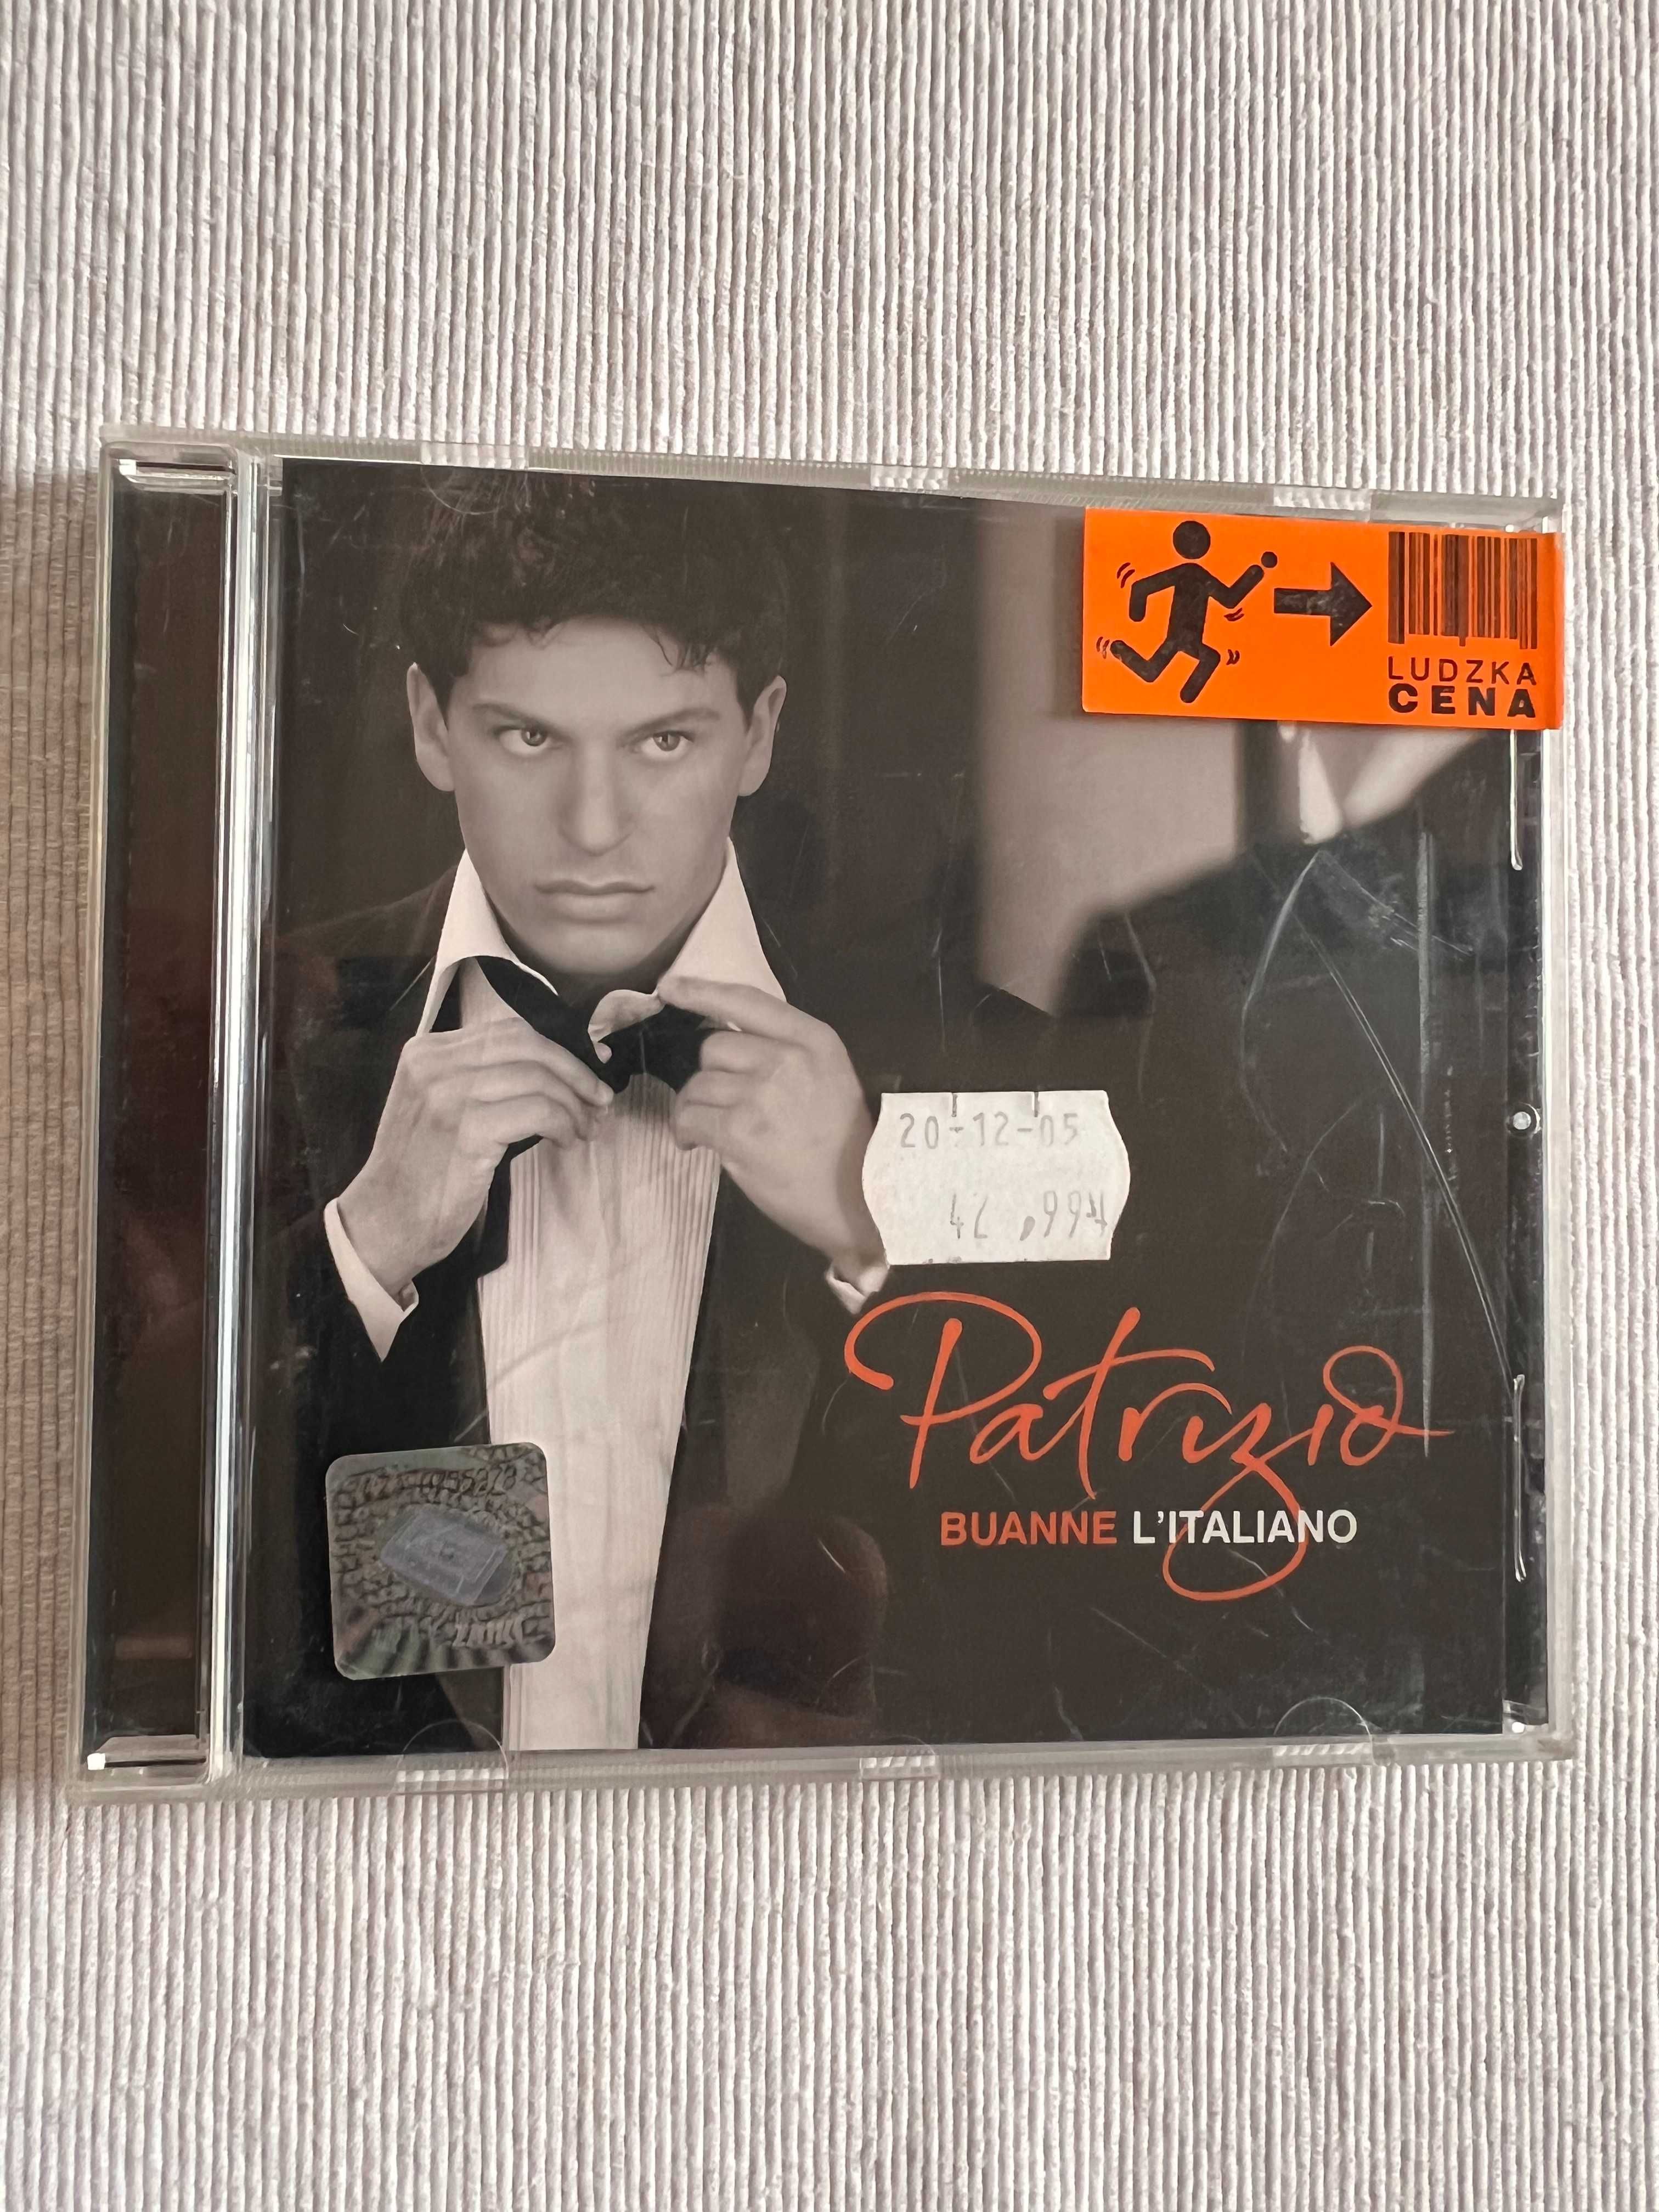 Patrizio Buanne L'Italiano CD super stan